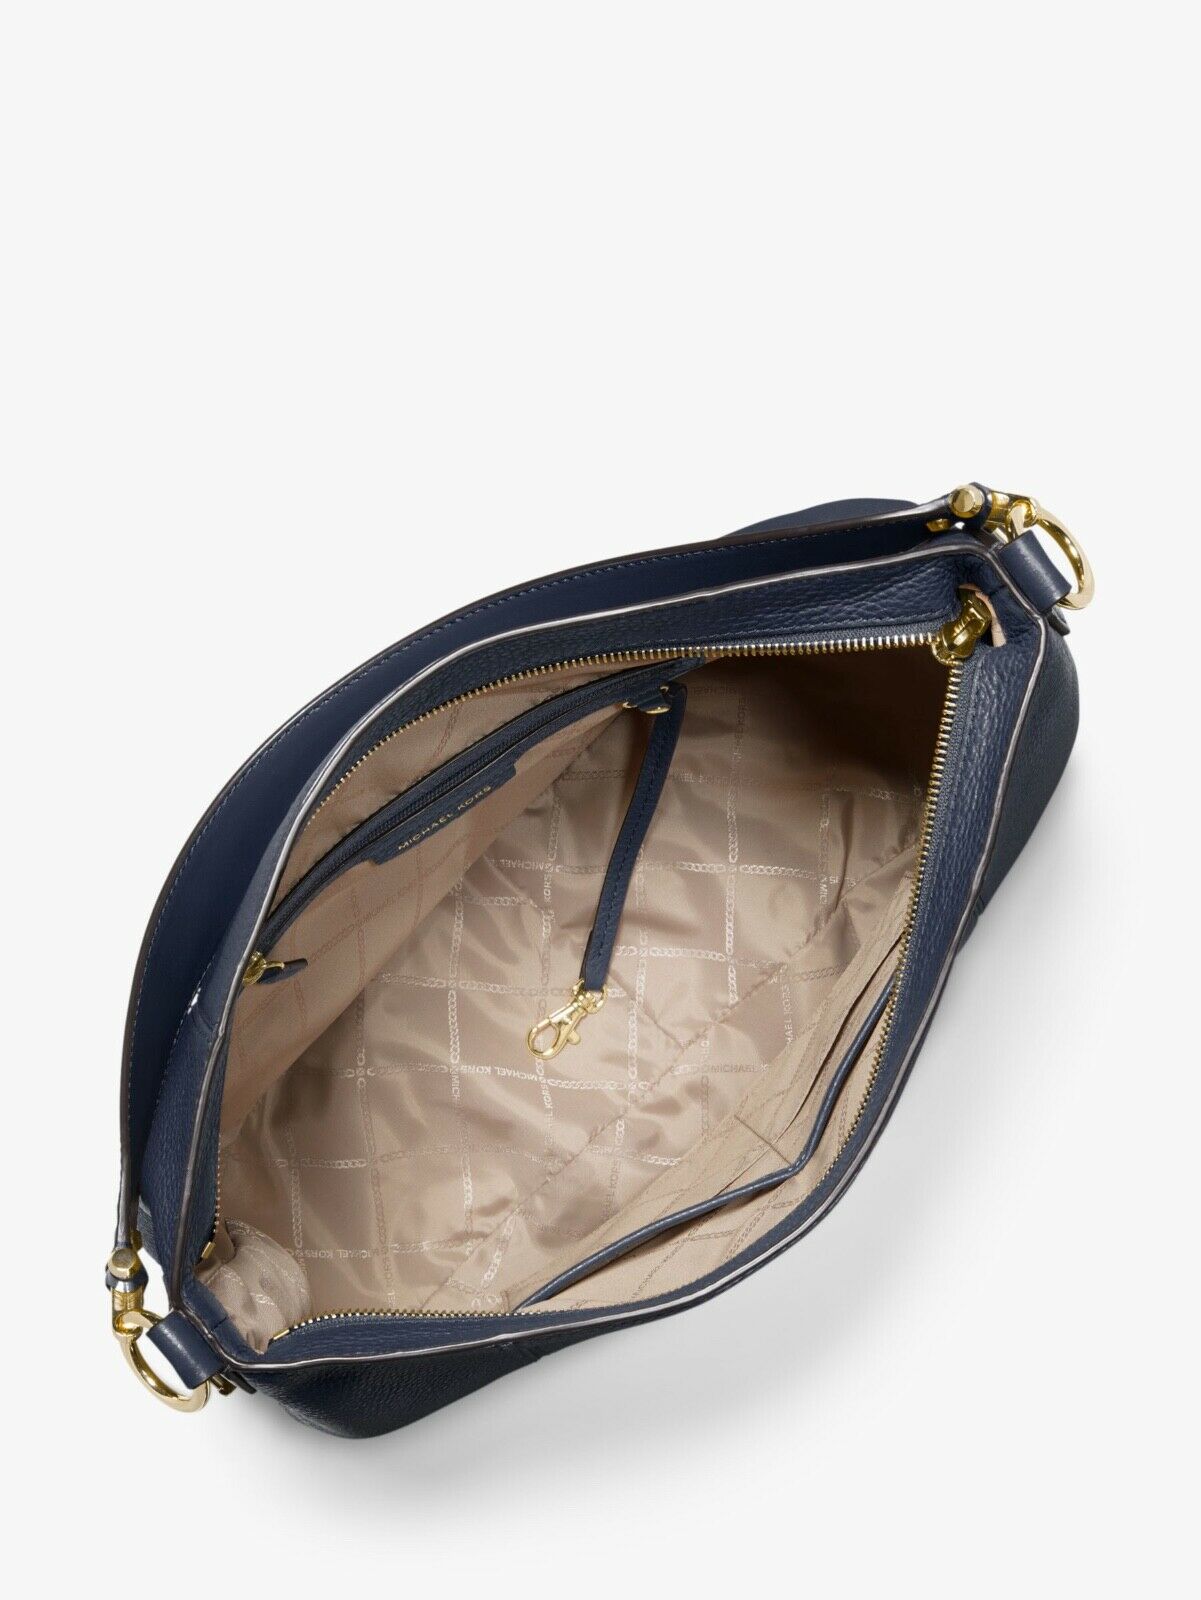 Michael Kors Navy Pebbled Leather Large Brooke Hobo Shoulder Purse Bag